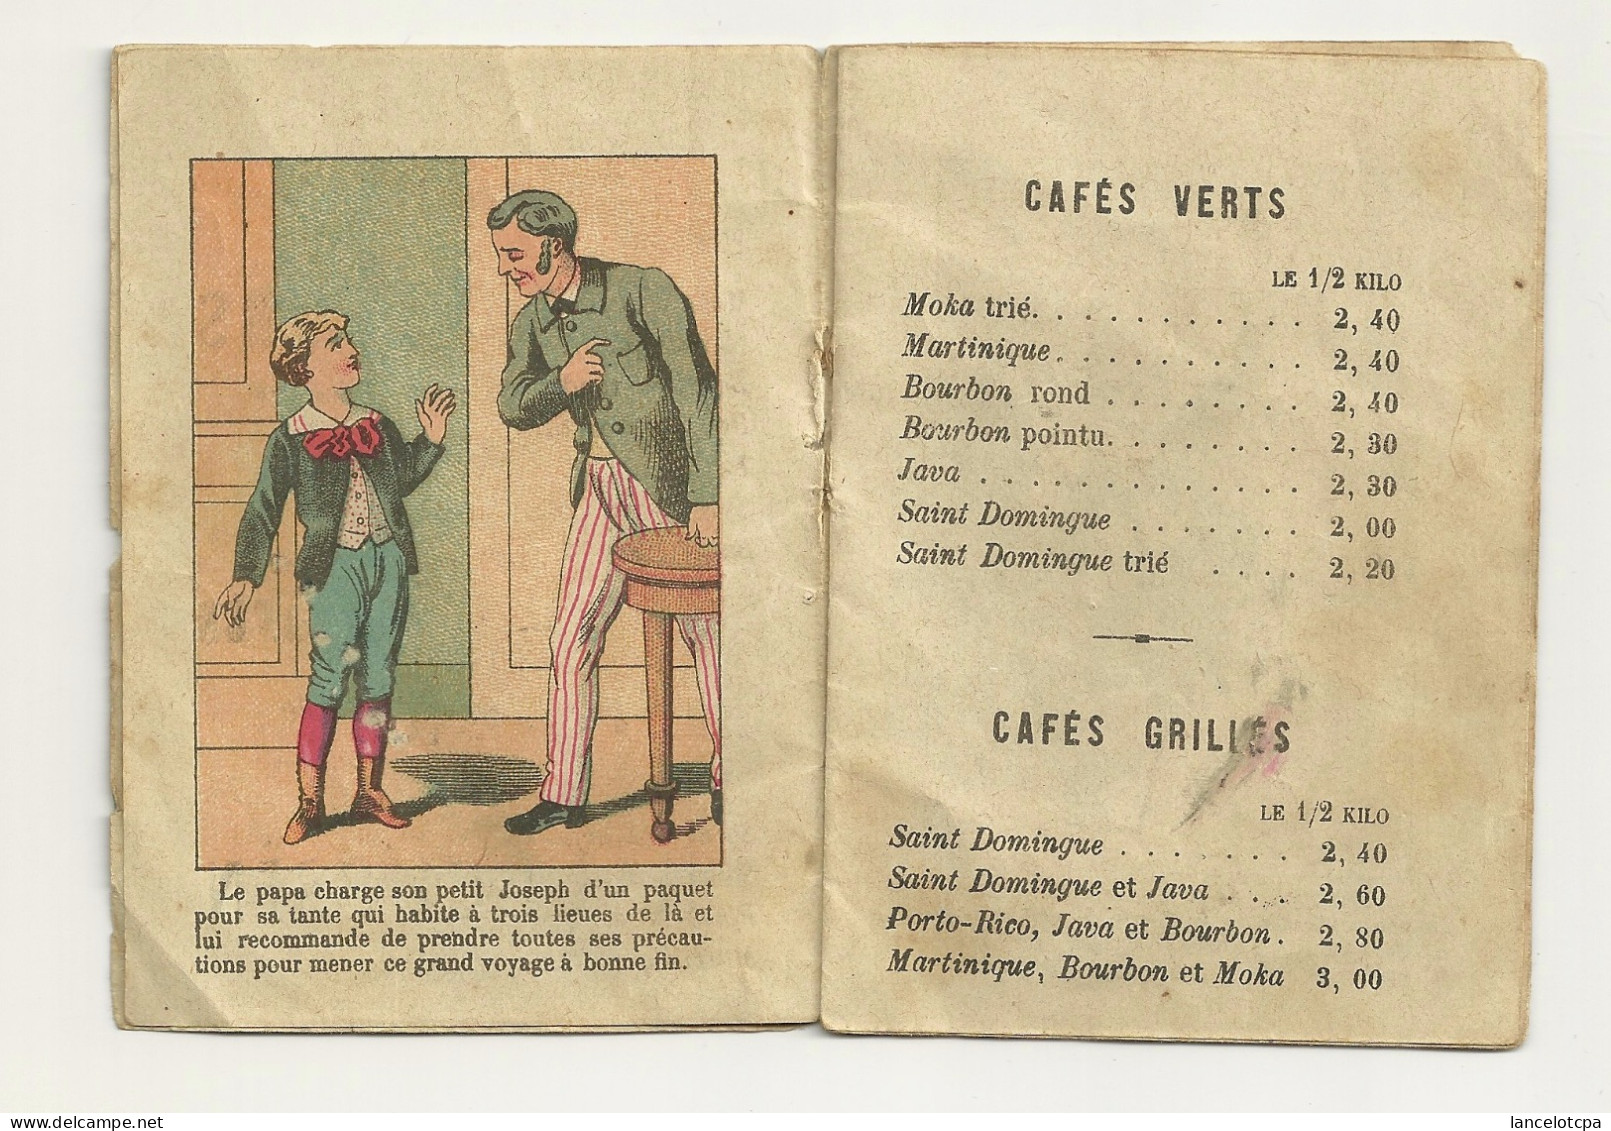 PETIT LIVRET PUBLICITAIRE 1888 / JOSEPH LE VOYAGEUR - MAISON DES PRODUCTEURS à NANTES - SPECIALITE DE CAFES - Publicités